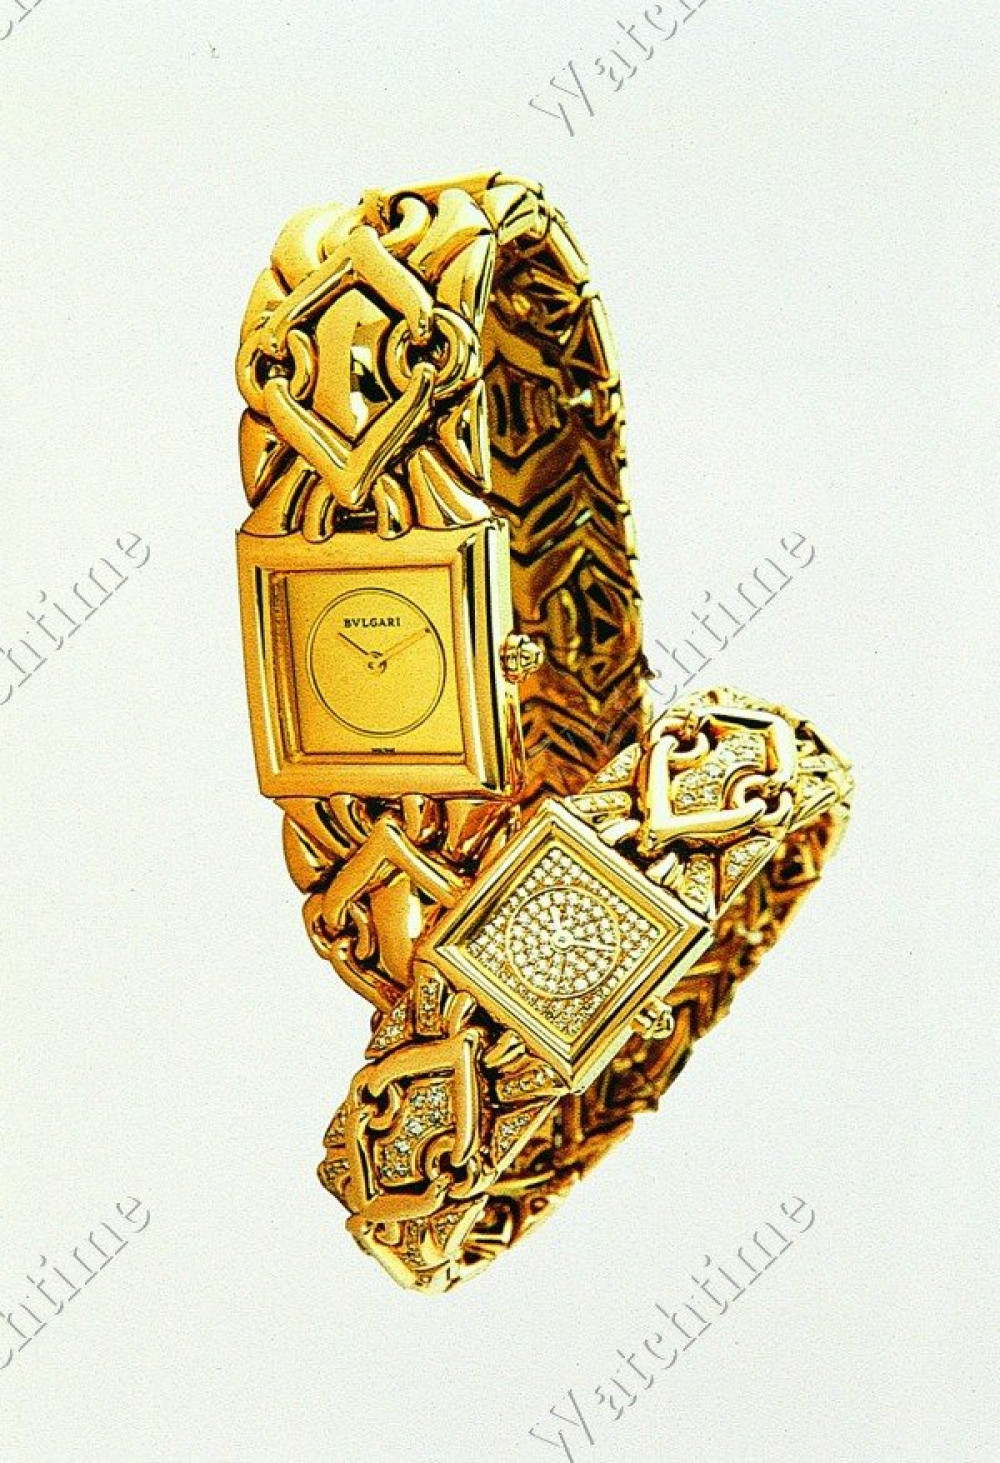 Zegarek firmy Bulgari, model Trika